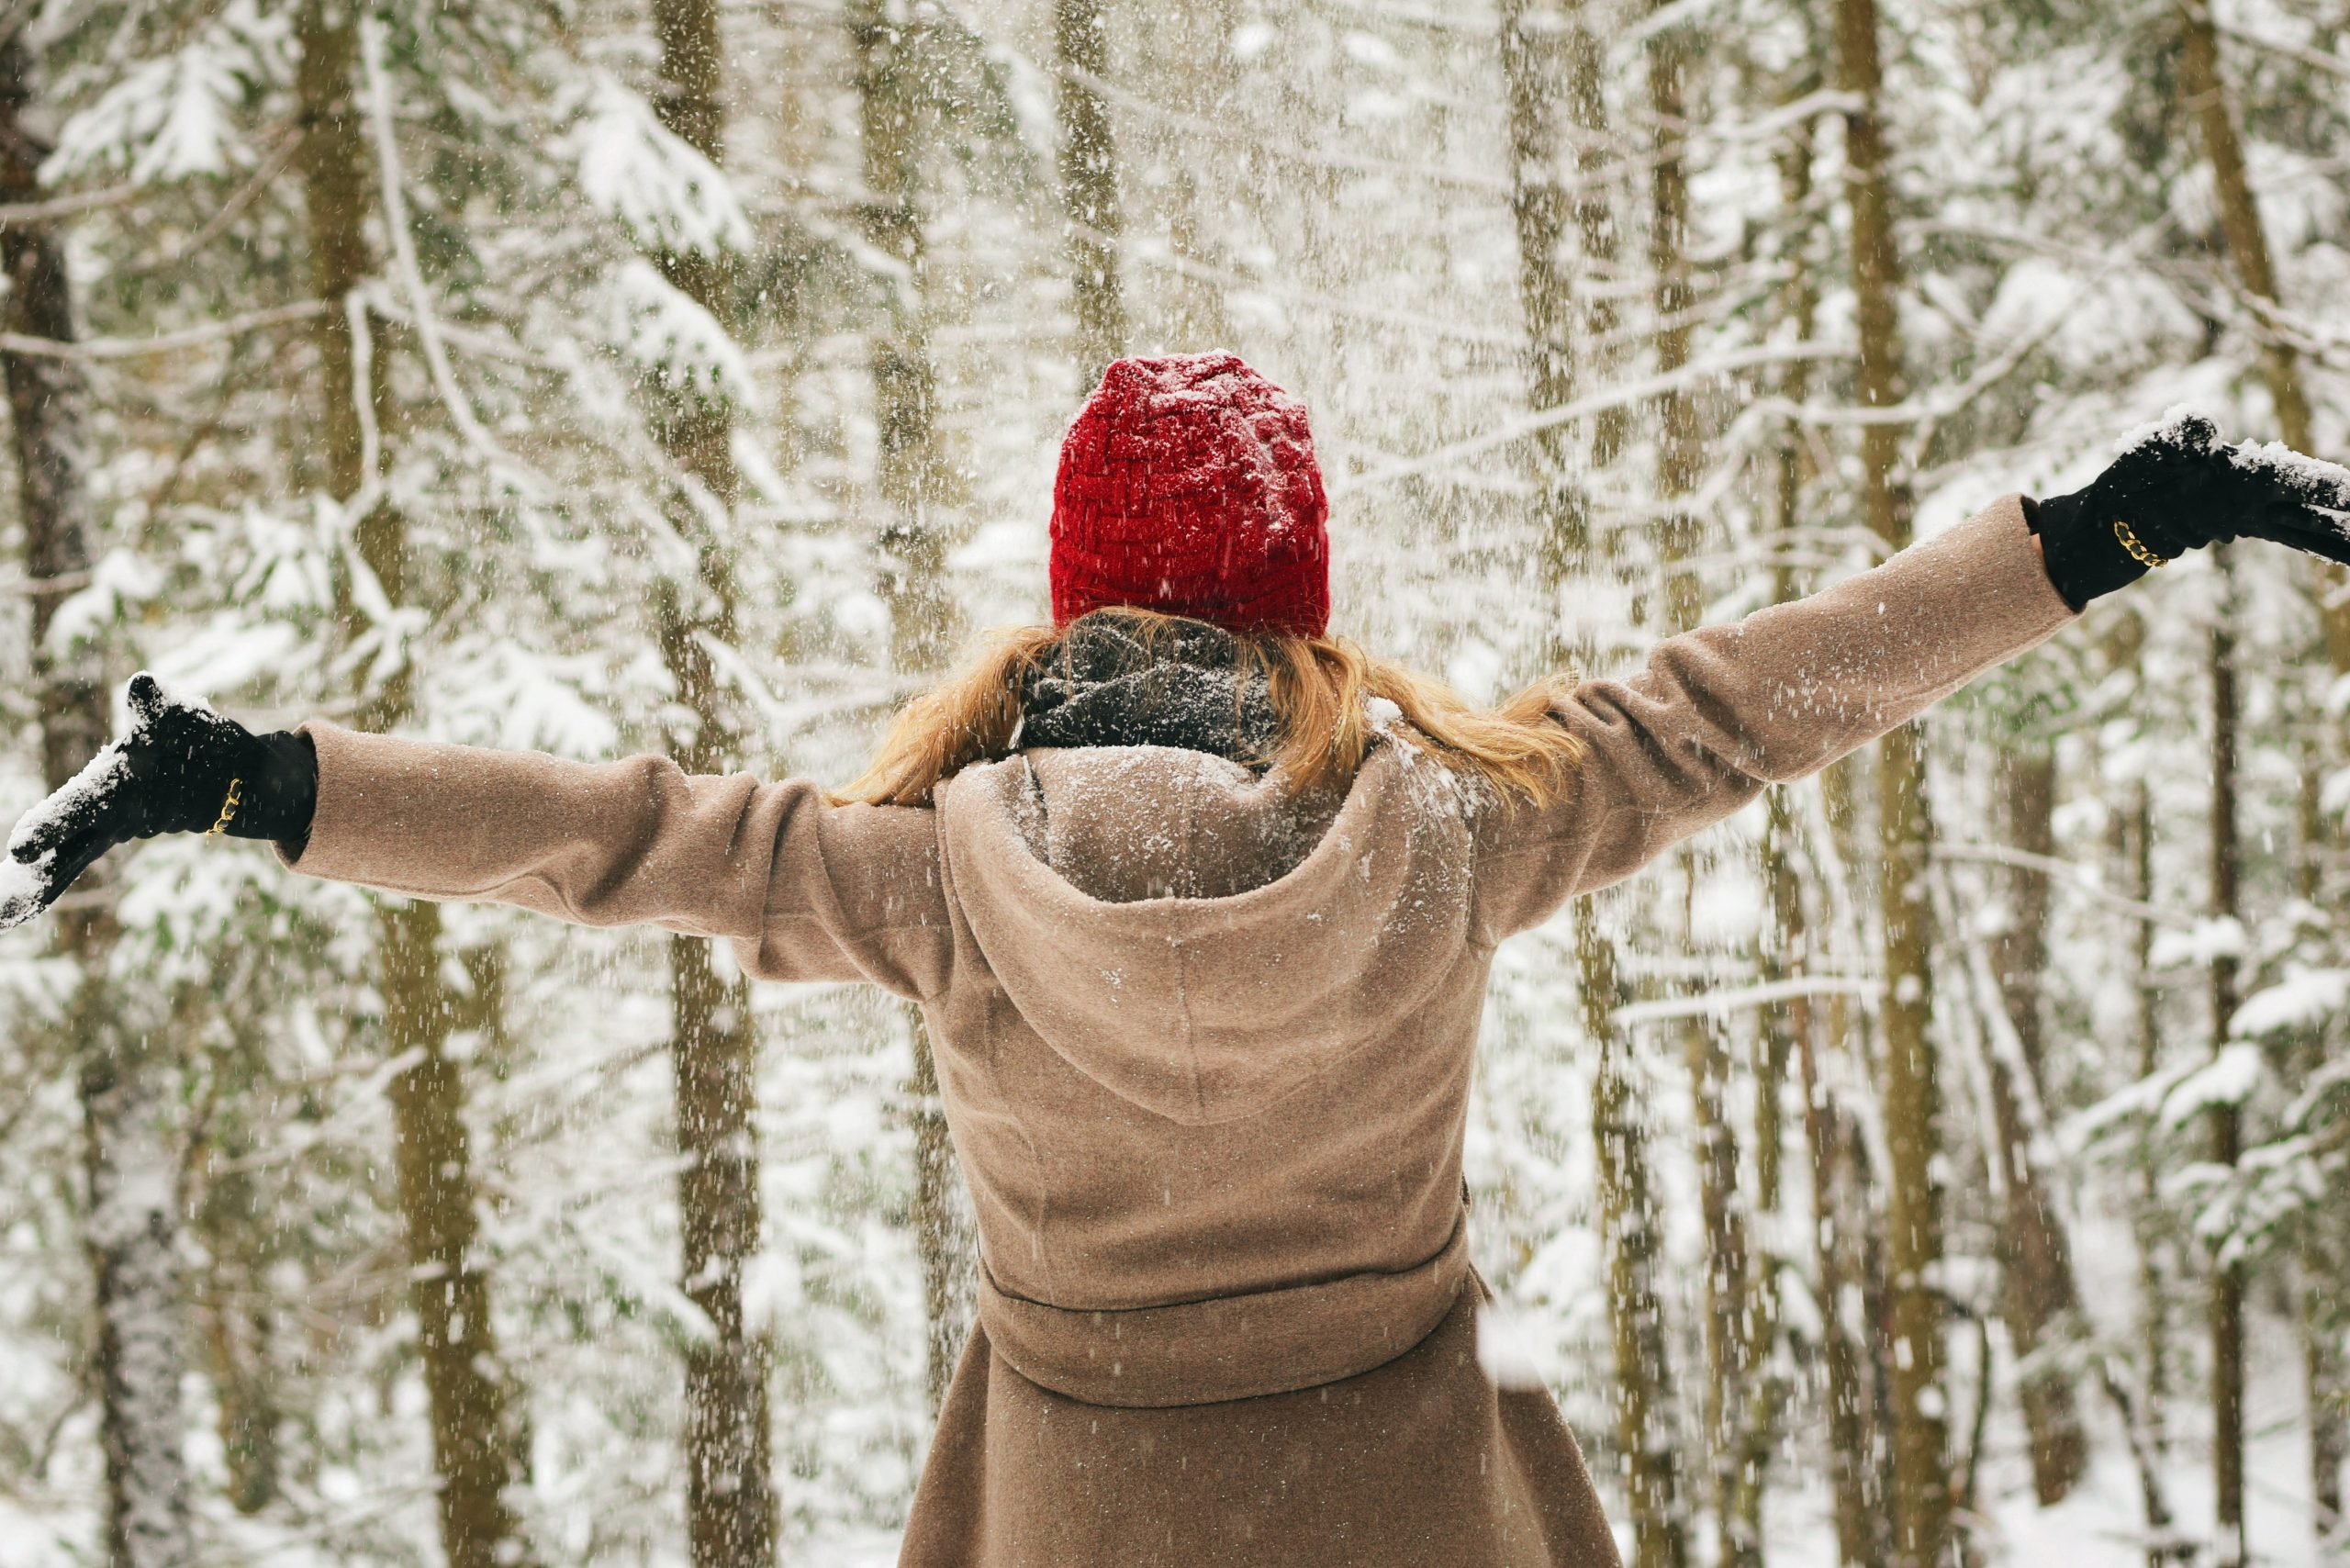 Valkeakosken ammattiopisto, VAAO. Henkilö seisoo selin kameraan talvisessa maisemassa. Hänellä on päällään punainen pipo, beige takki ja mustat hanskat. Hänen päälleen sataa lunta.